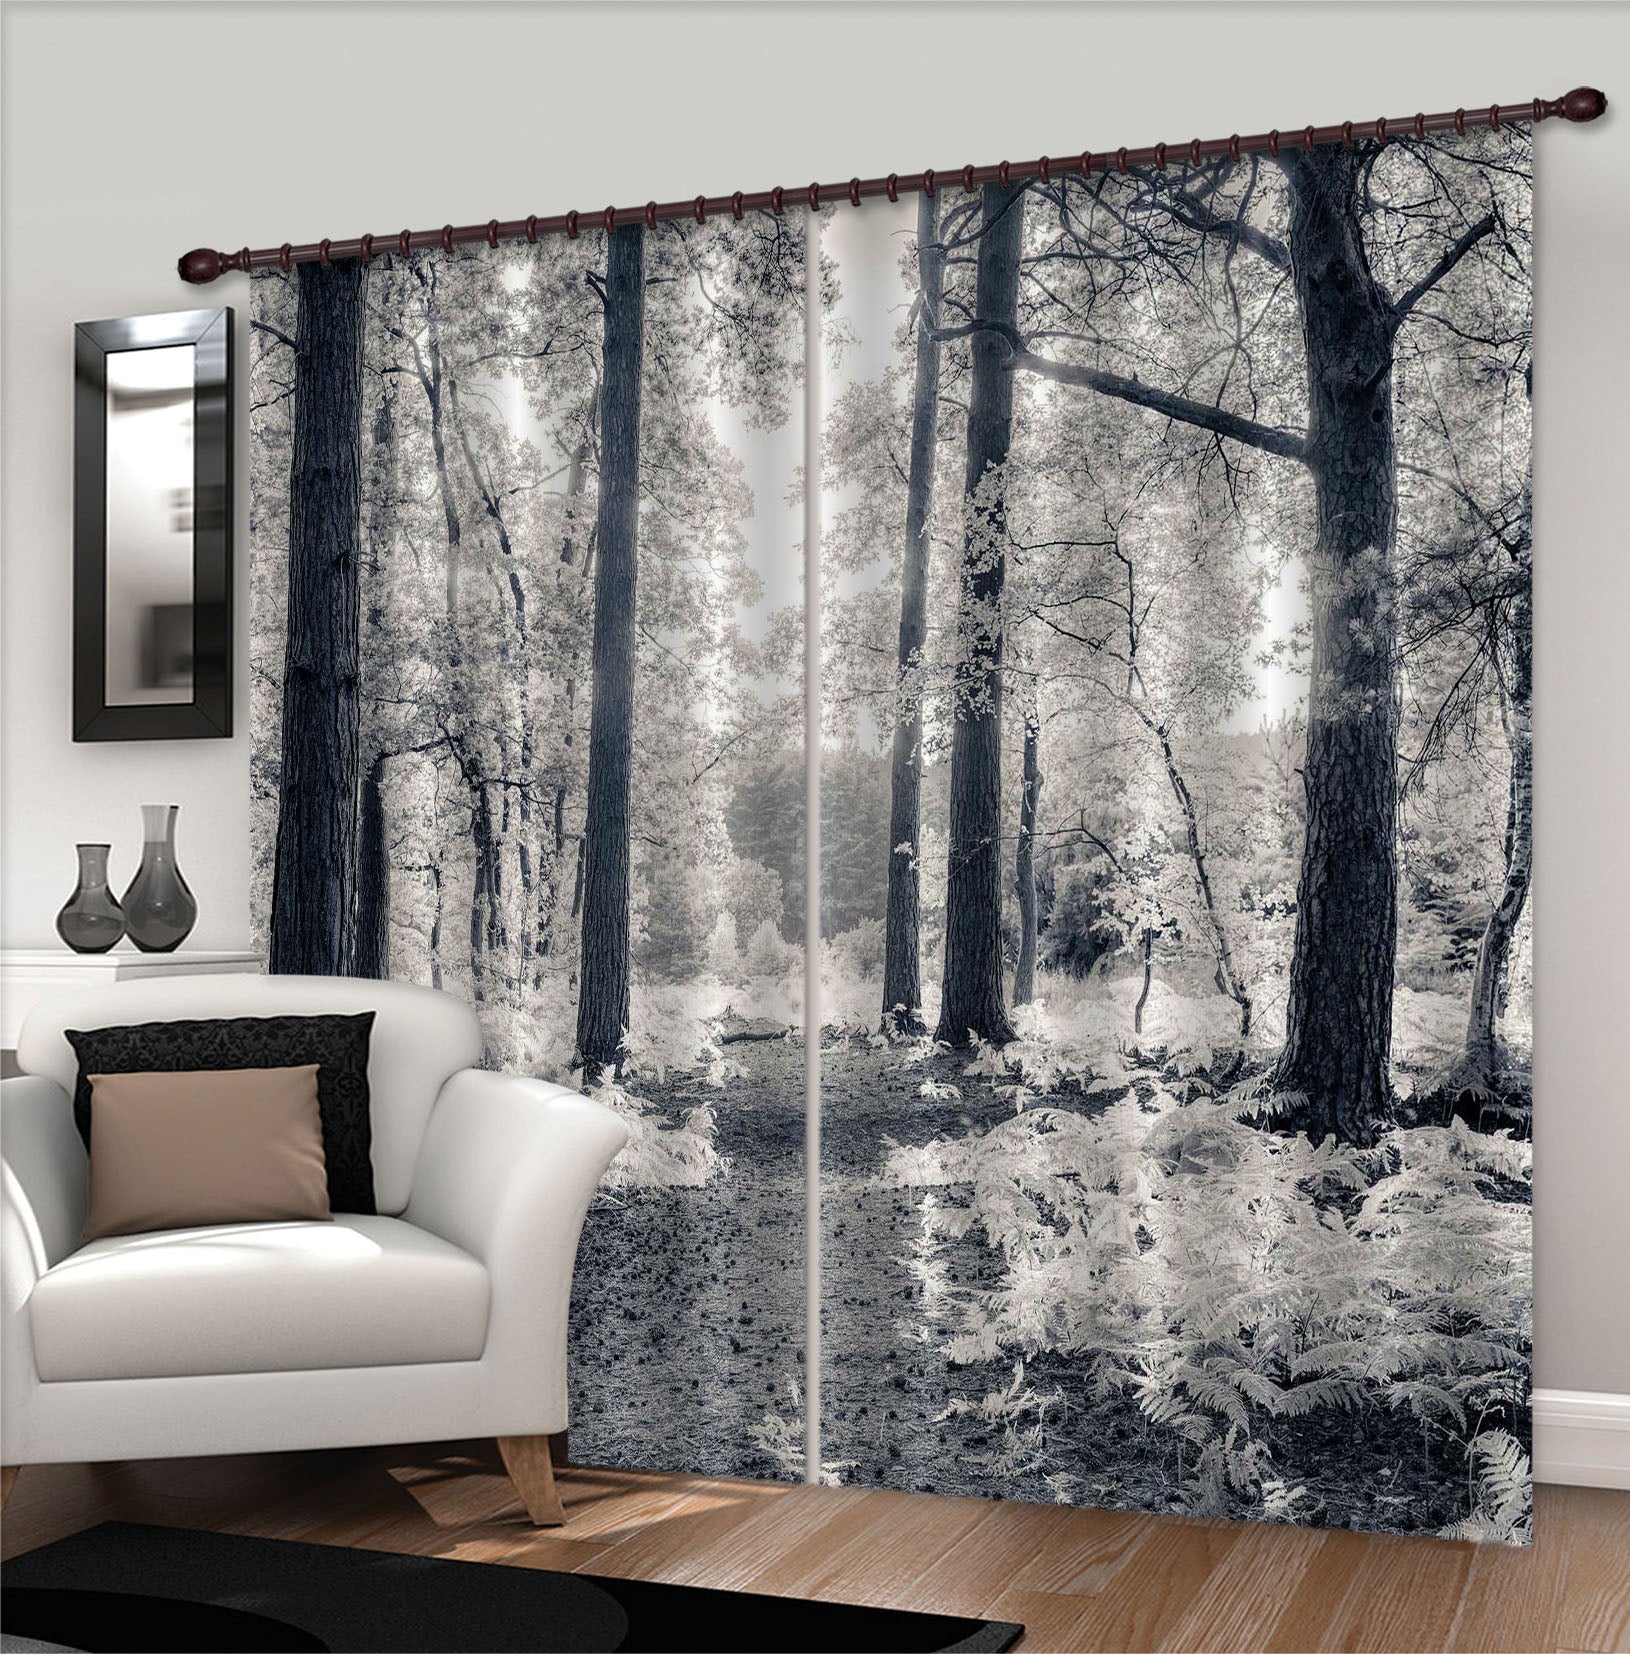 3D White Leaf 6398 Assaf Frank Curtain Curtains Drapes